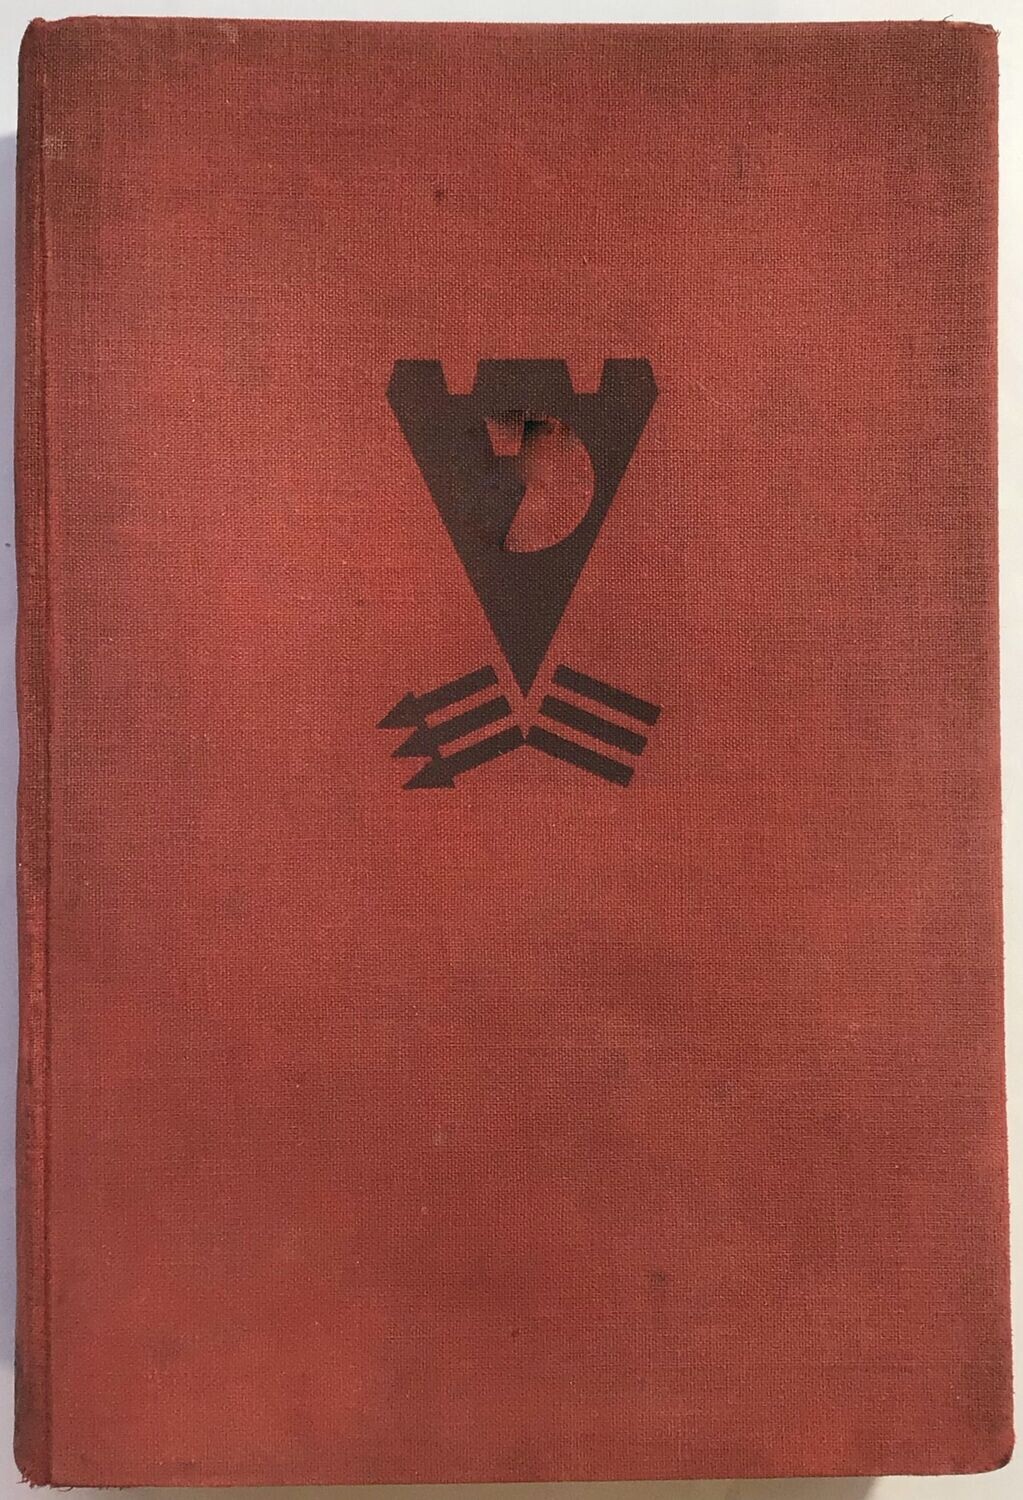 Rosten: Vom Bonzentum zum Dritten Reich - Ganzleinenausgabe (3. Auflage) aus dem Jahr 1933.